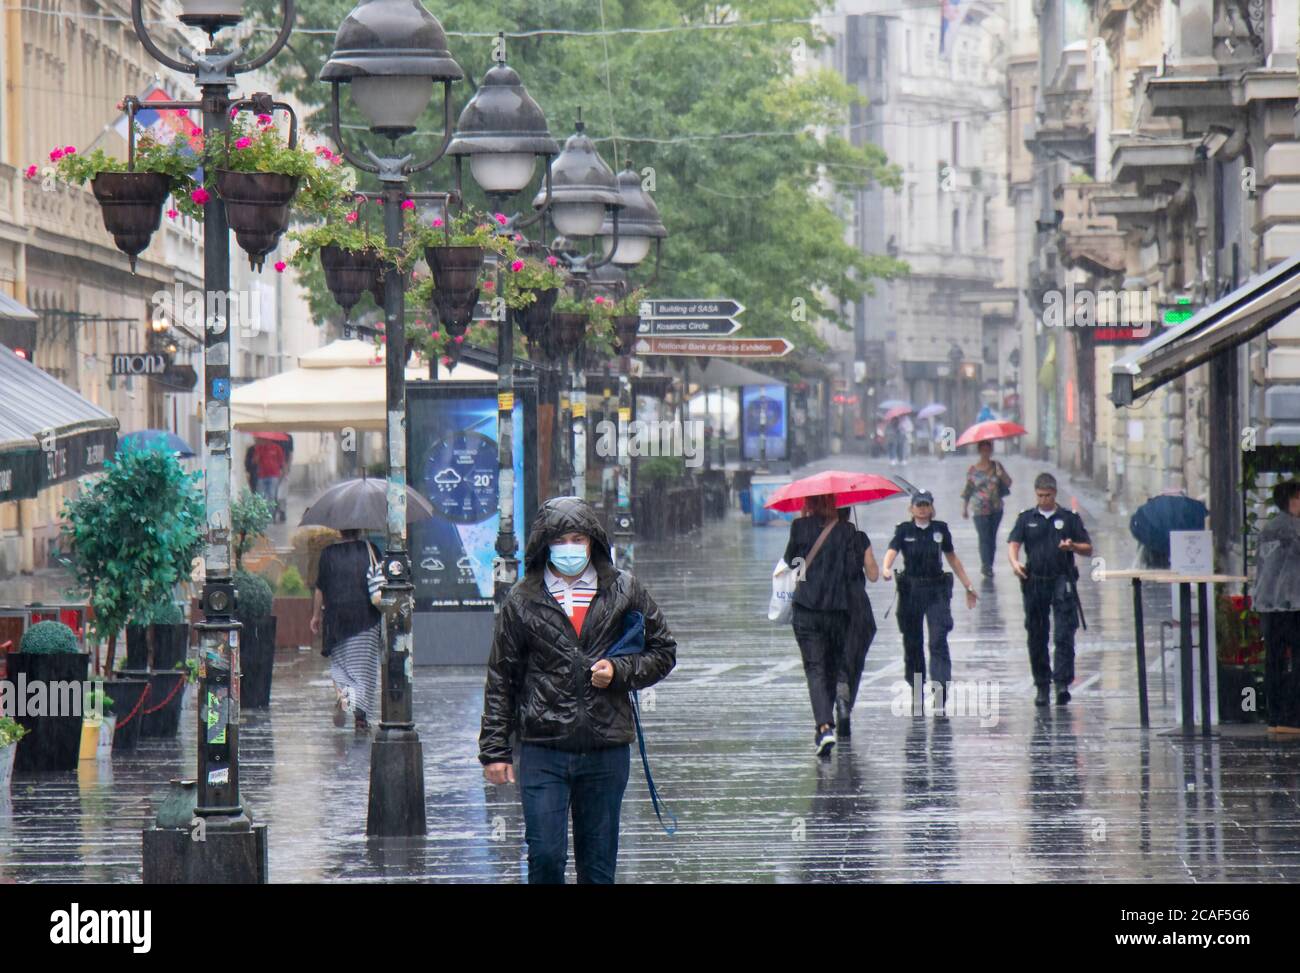 Belgrado, Serbia - 5 de agosto de 2020: Gente caminando por la calle peatonal Knez Mihailova en un día lluvioso de verano en la ciudad Foto de stock